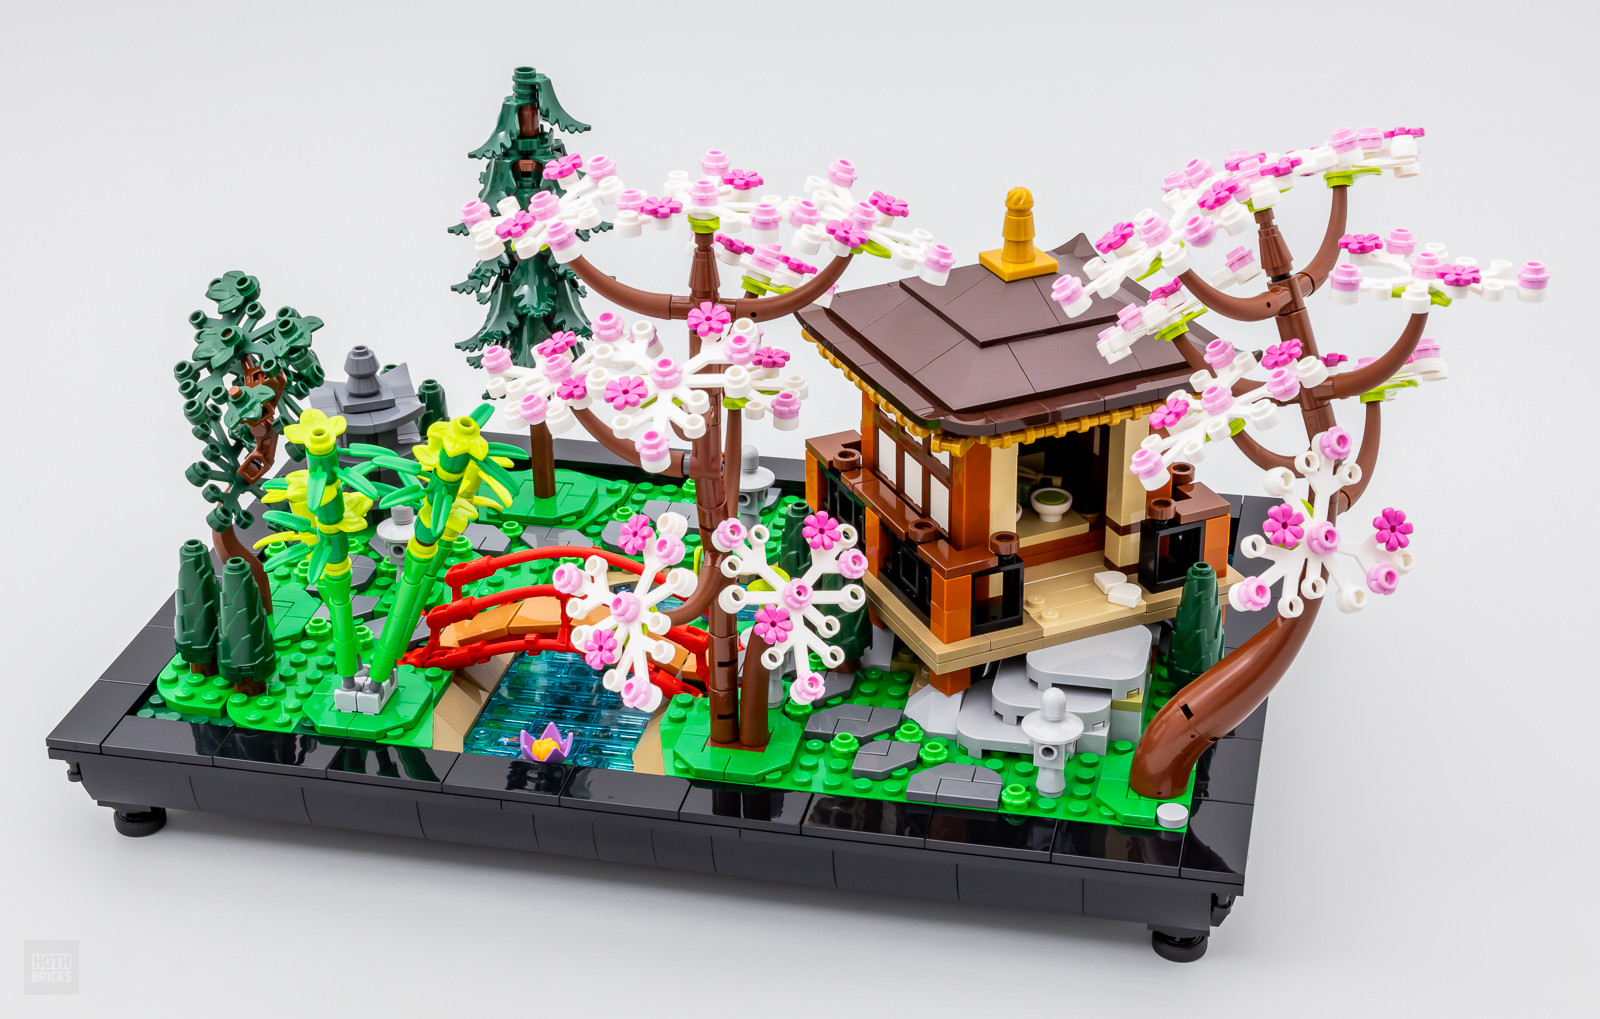 LEGO 10315 Icons Il Giardino Tranquillo, Kit Giardino Botanico Zen